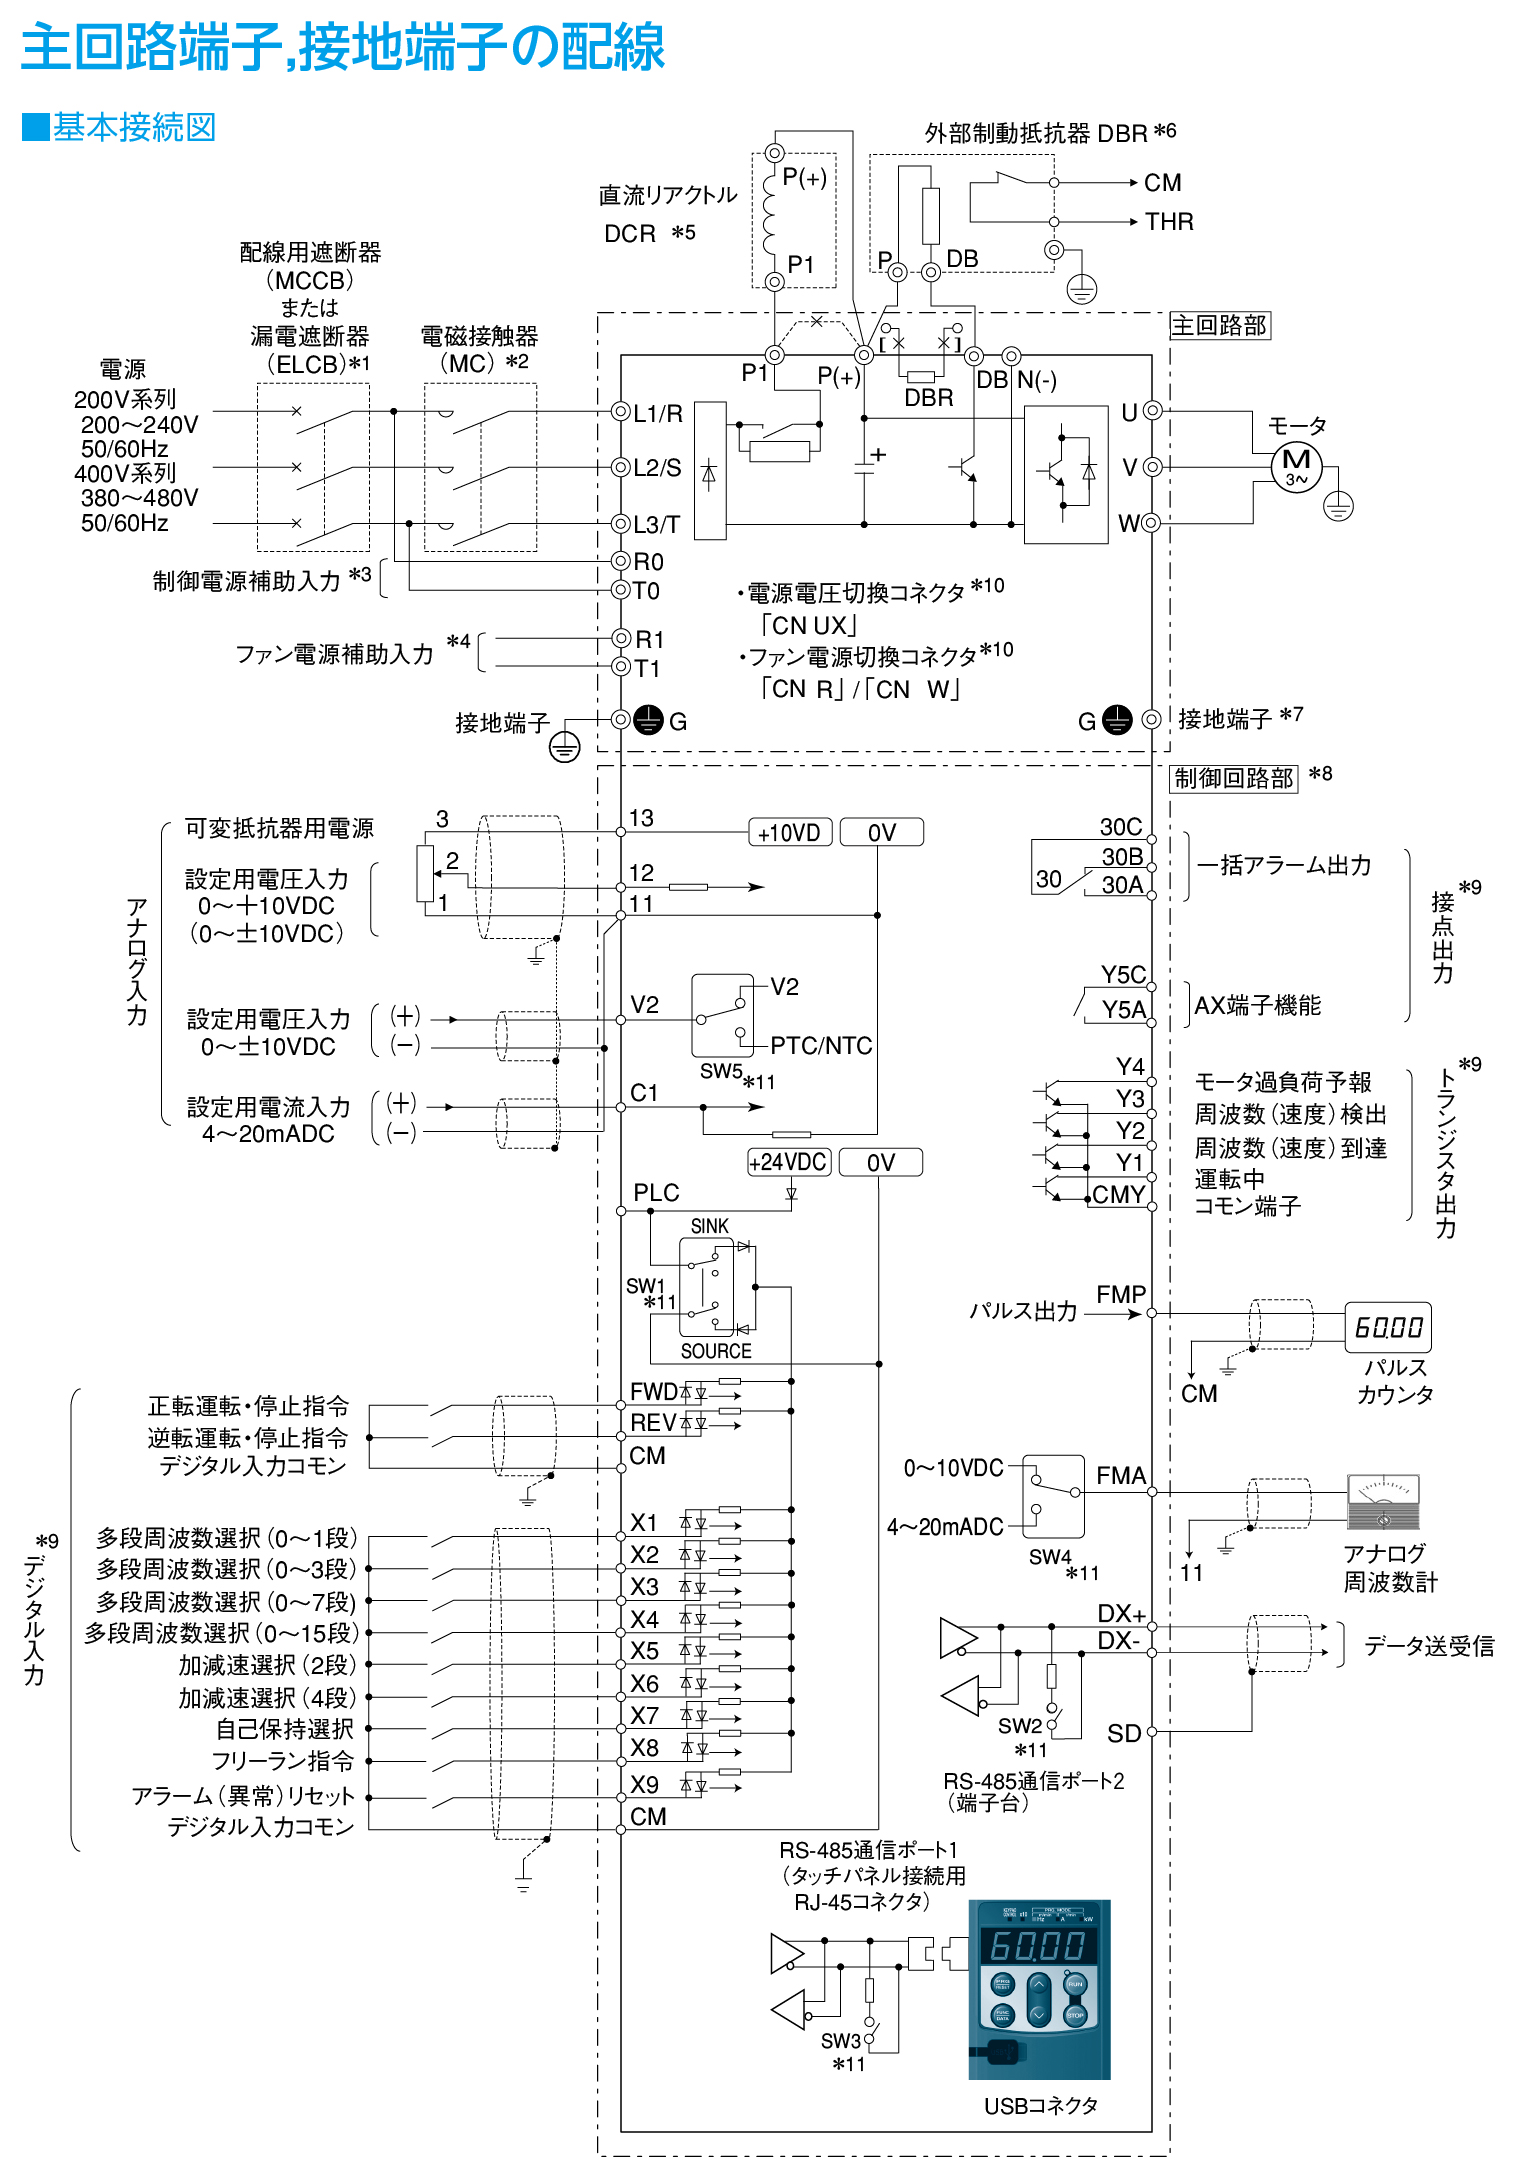 FRN110G1S-4Jの接続図